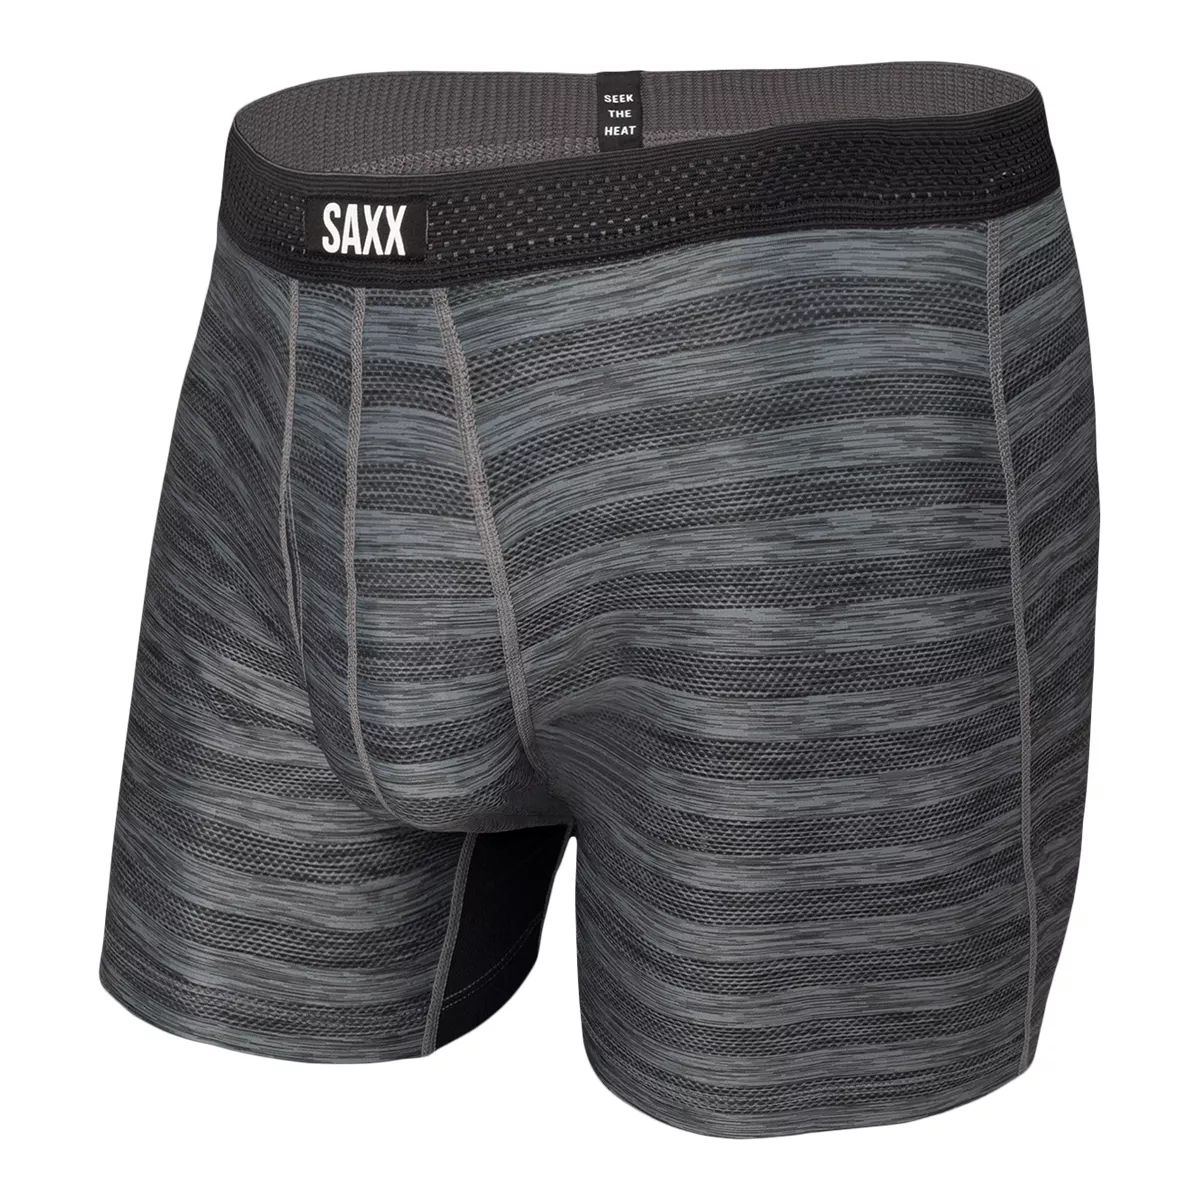 SAXX Droptemp Hotshot Stripe Men's Boxer Brief, Workout Underwear